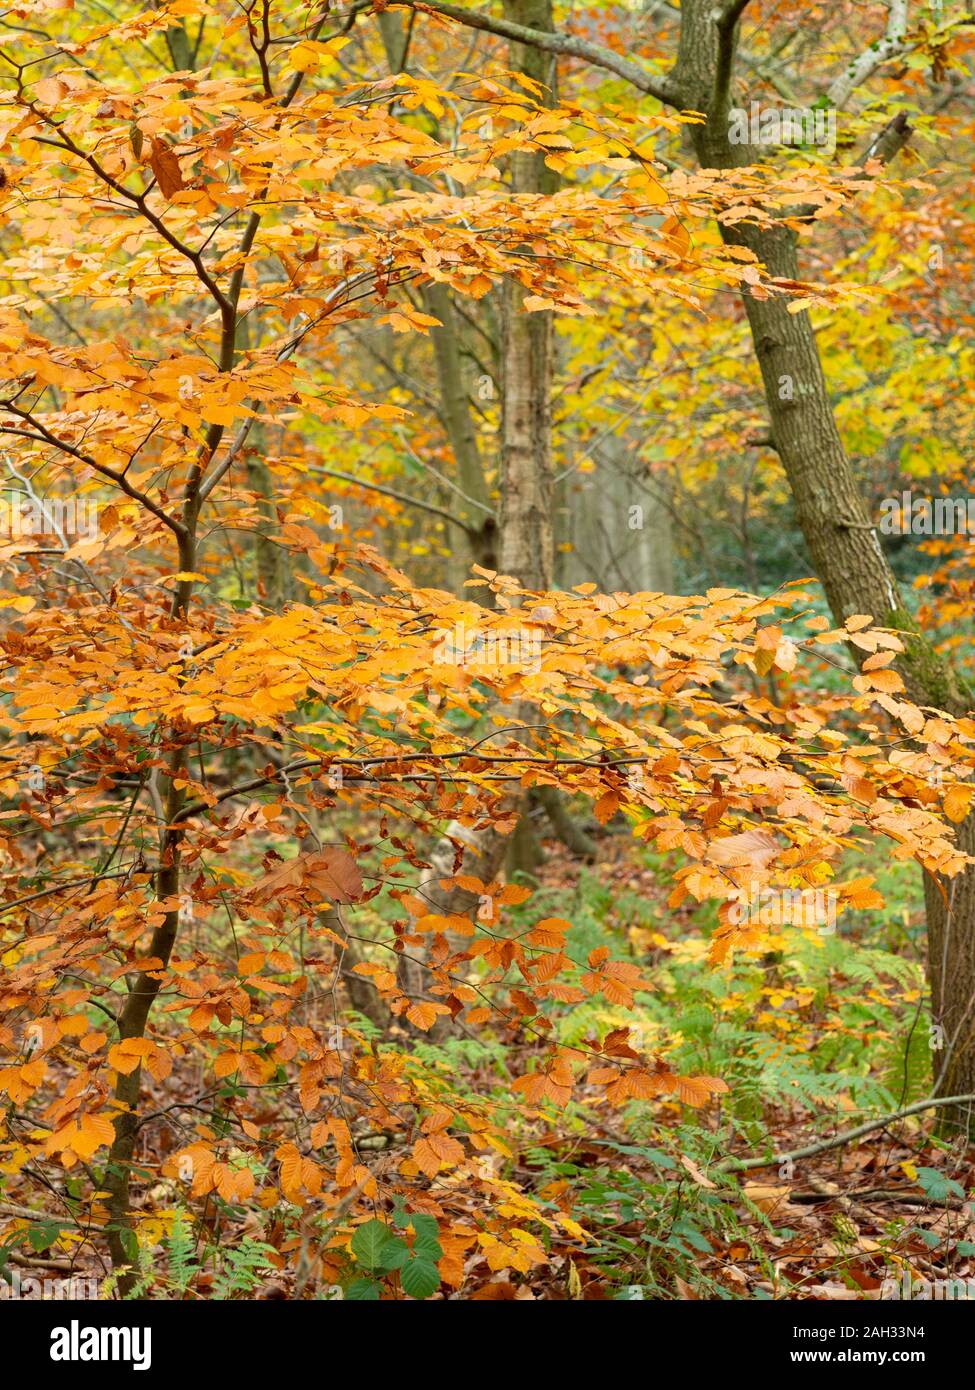 Autumn woodland scene. Stock Photo